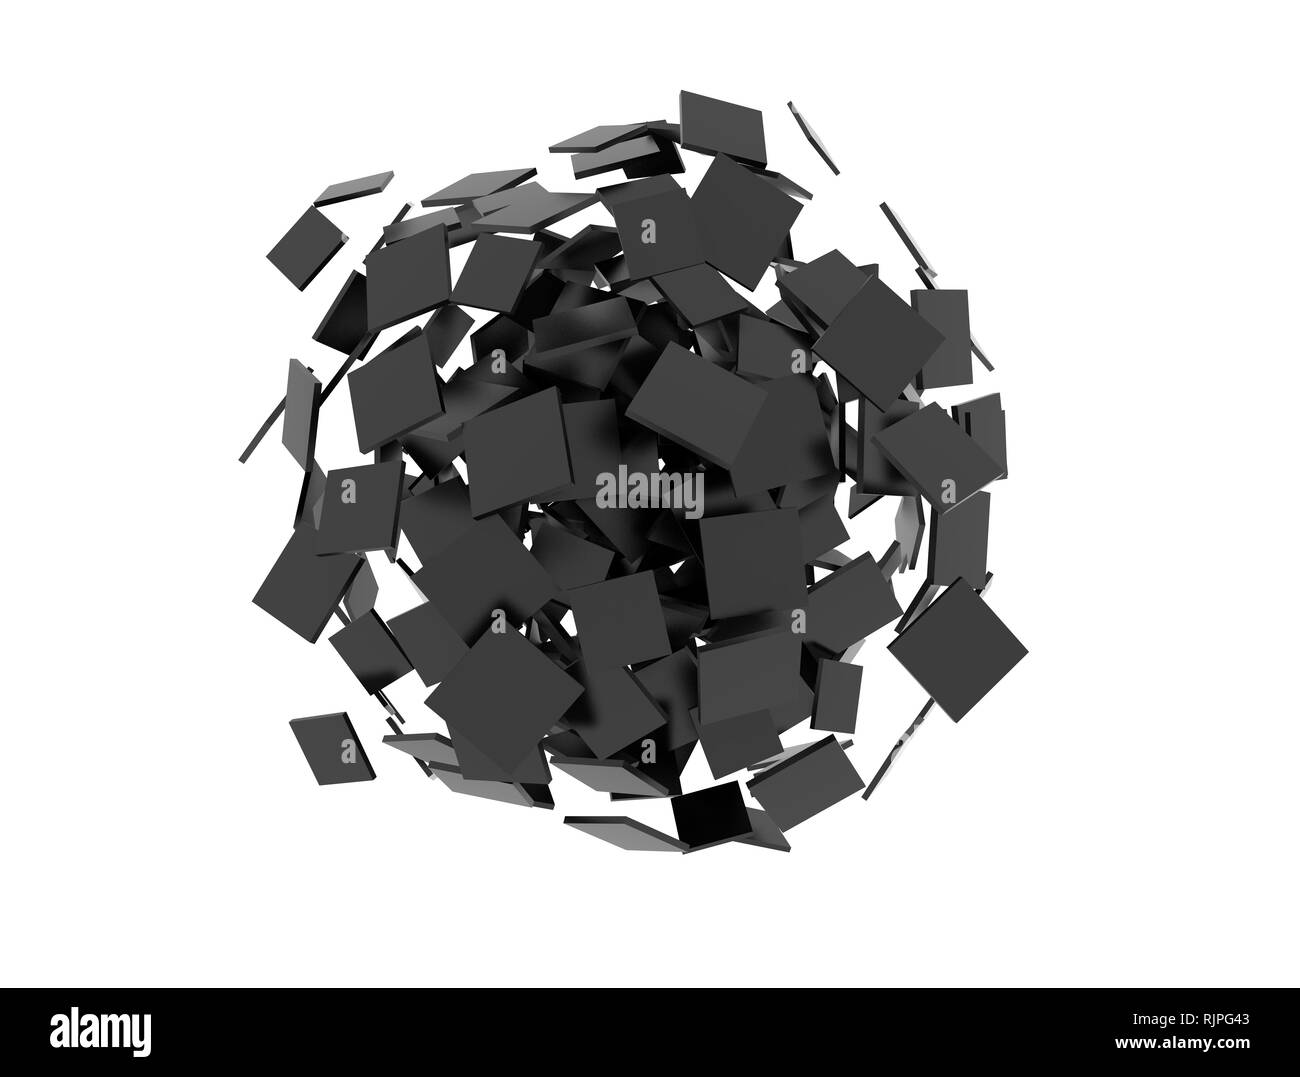 Zusammenfassung Cluster aus schwarzer Leere 3d-Quadrate Stockfoto